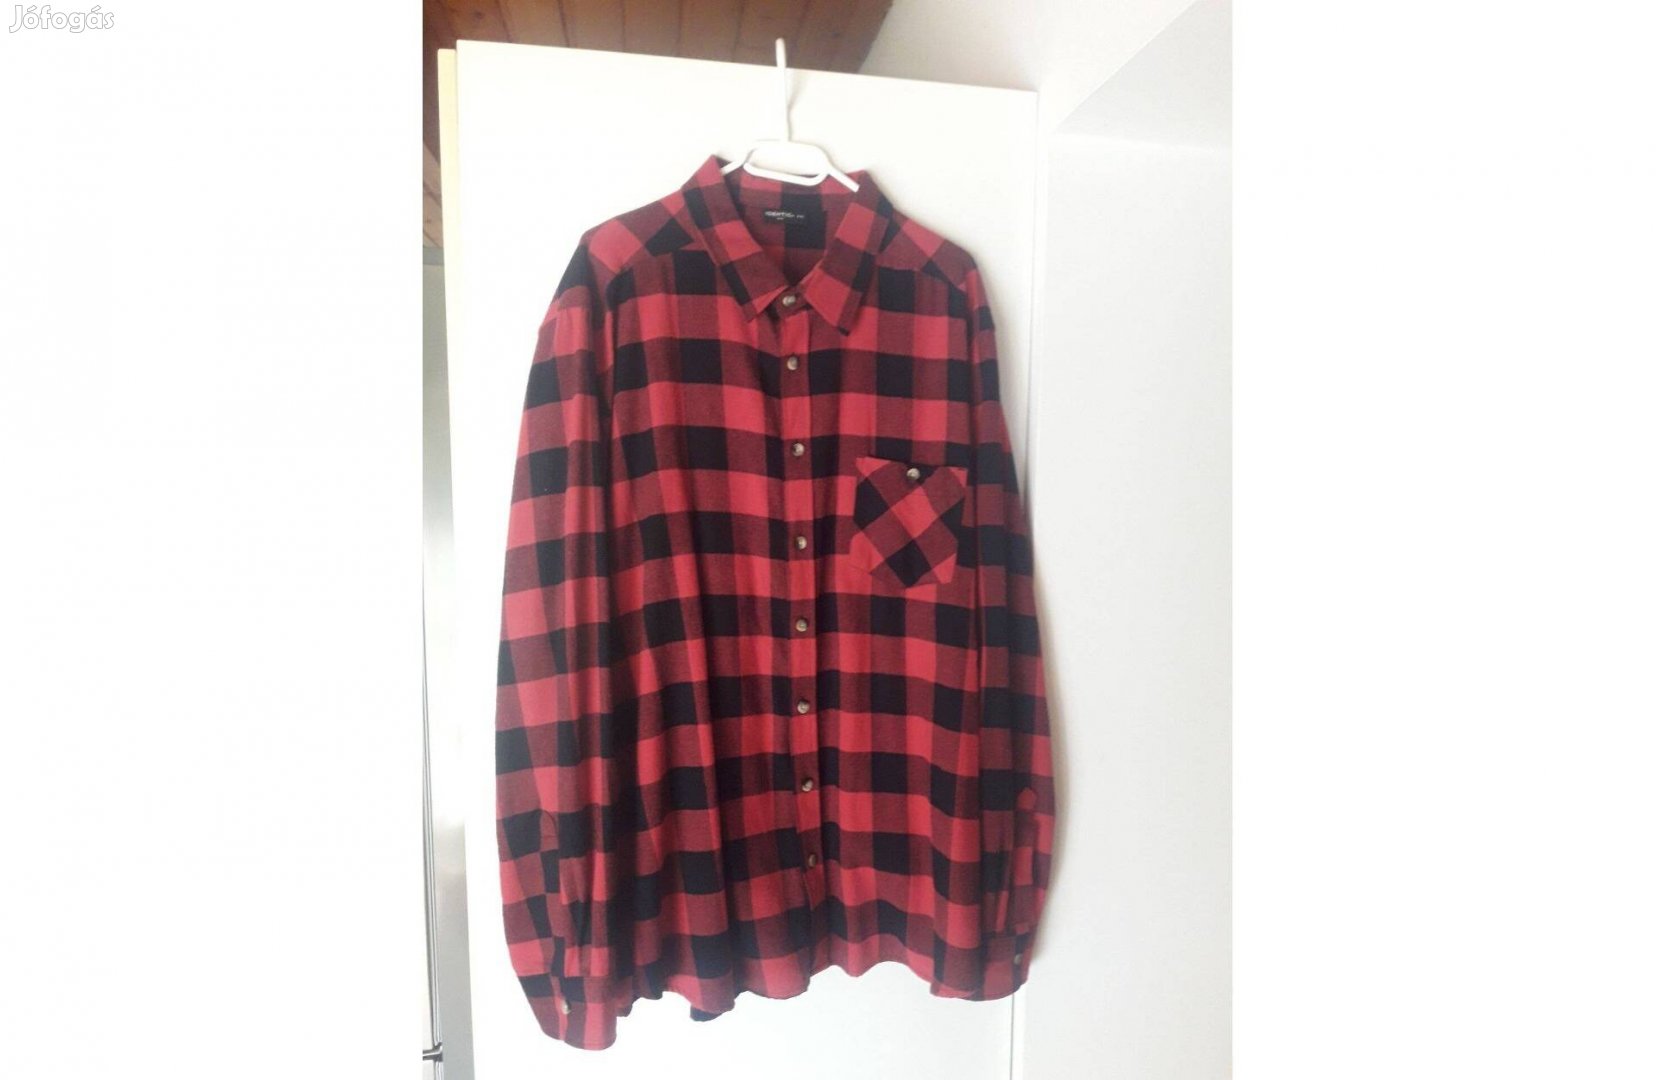 Piros-fekete kockás favágó ing puha flanel anyagból - 2xl méretben